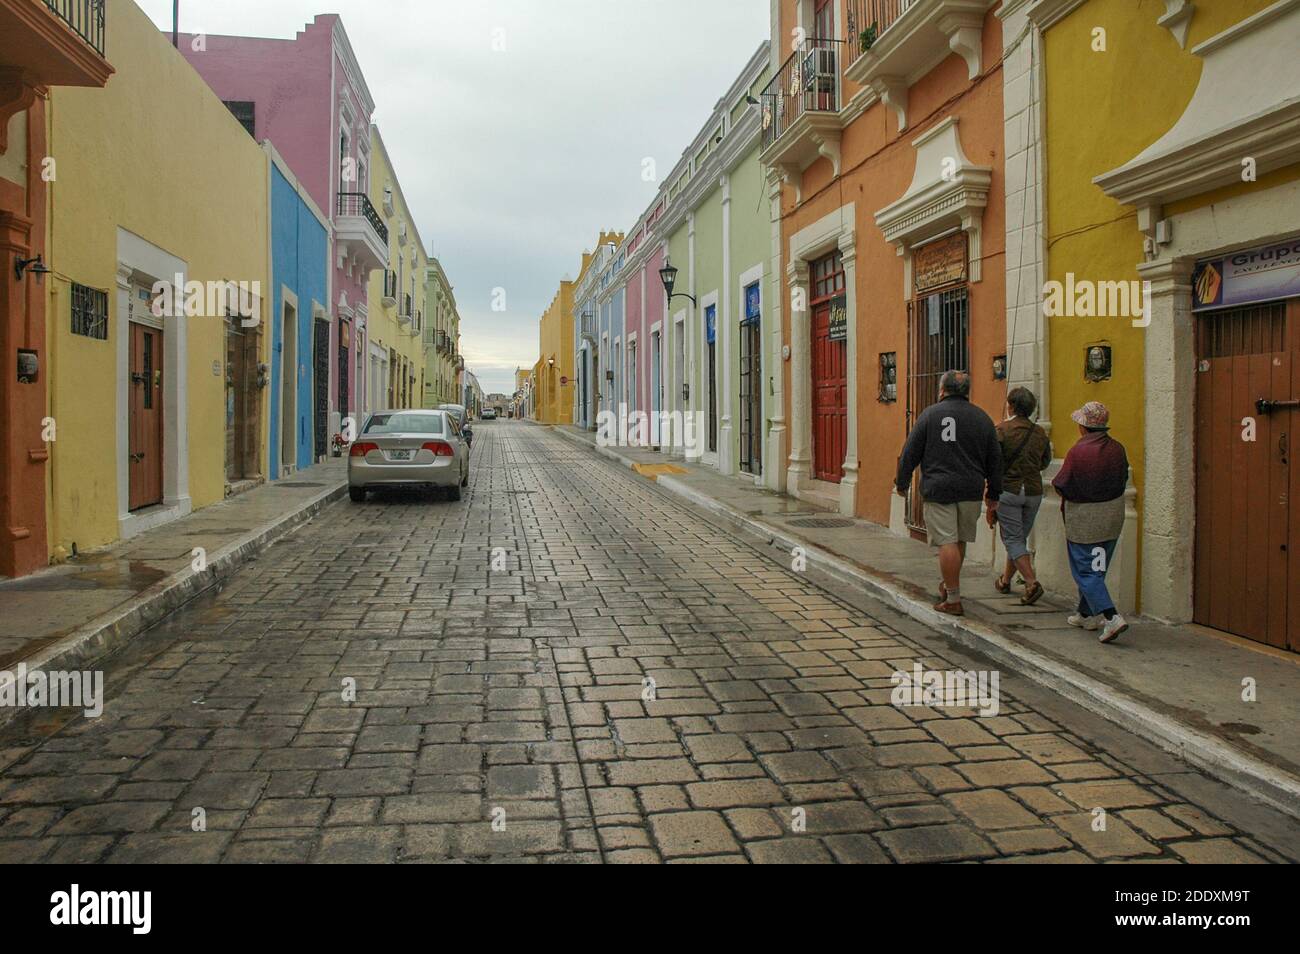 Una strada storica a Merida, Messico, nella Penisola dello Yucatan. Gli edifici storici sono in colori pastello e in uno stile architettonico coloniale. Foto Stock